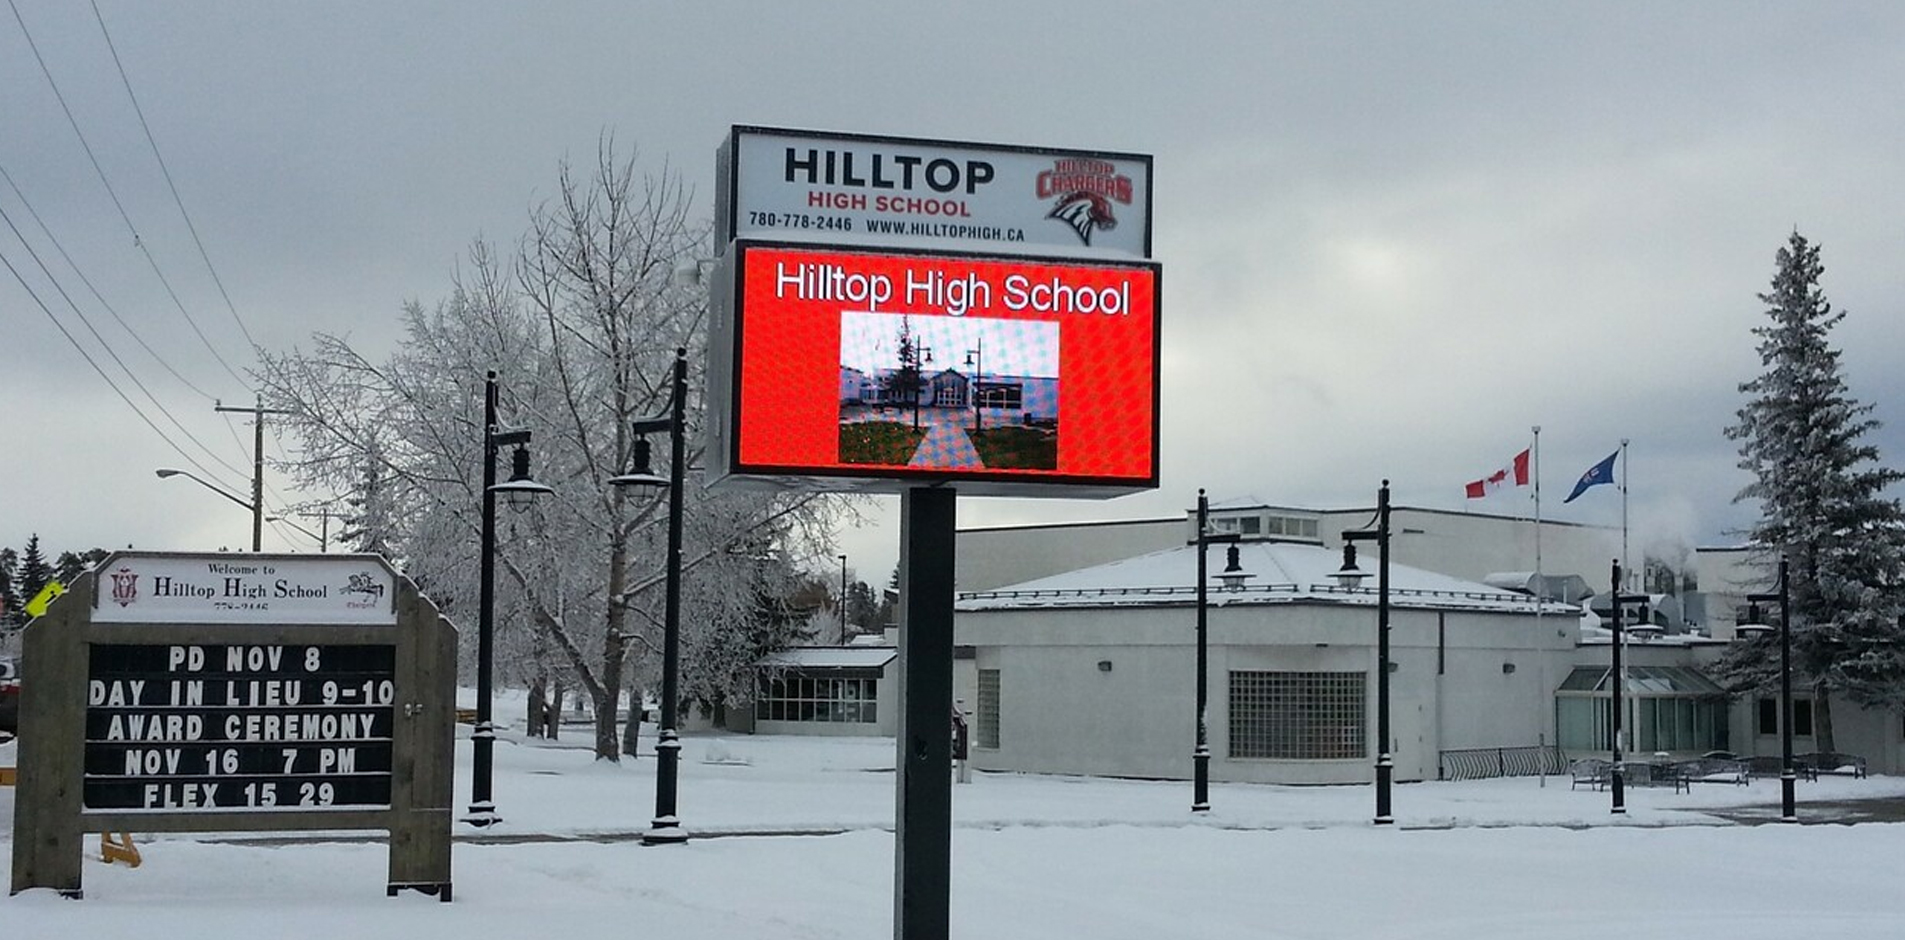 HILLTOP HIGH SCHOOL